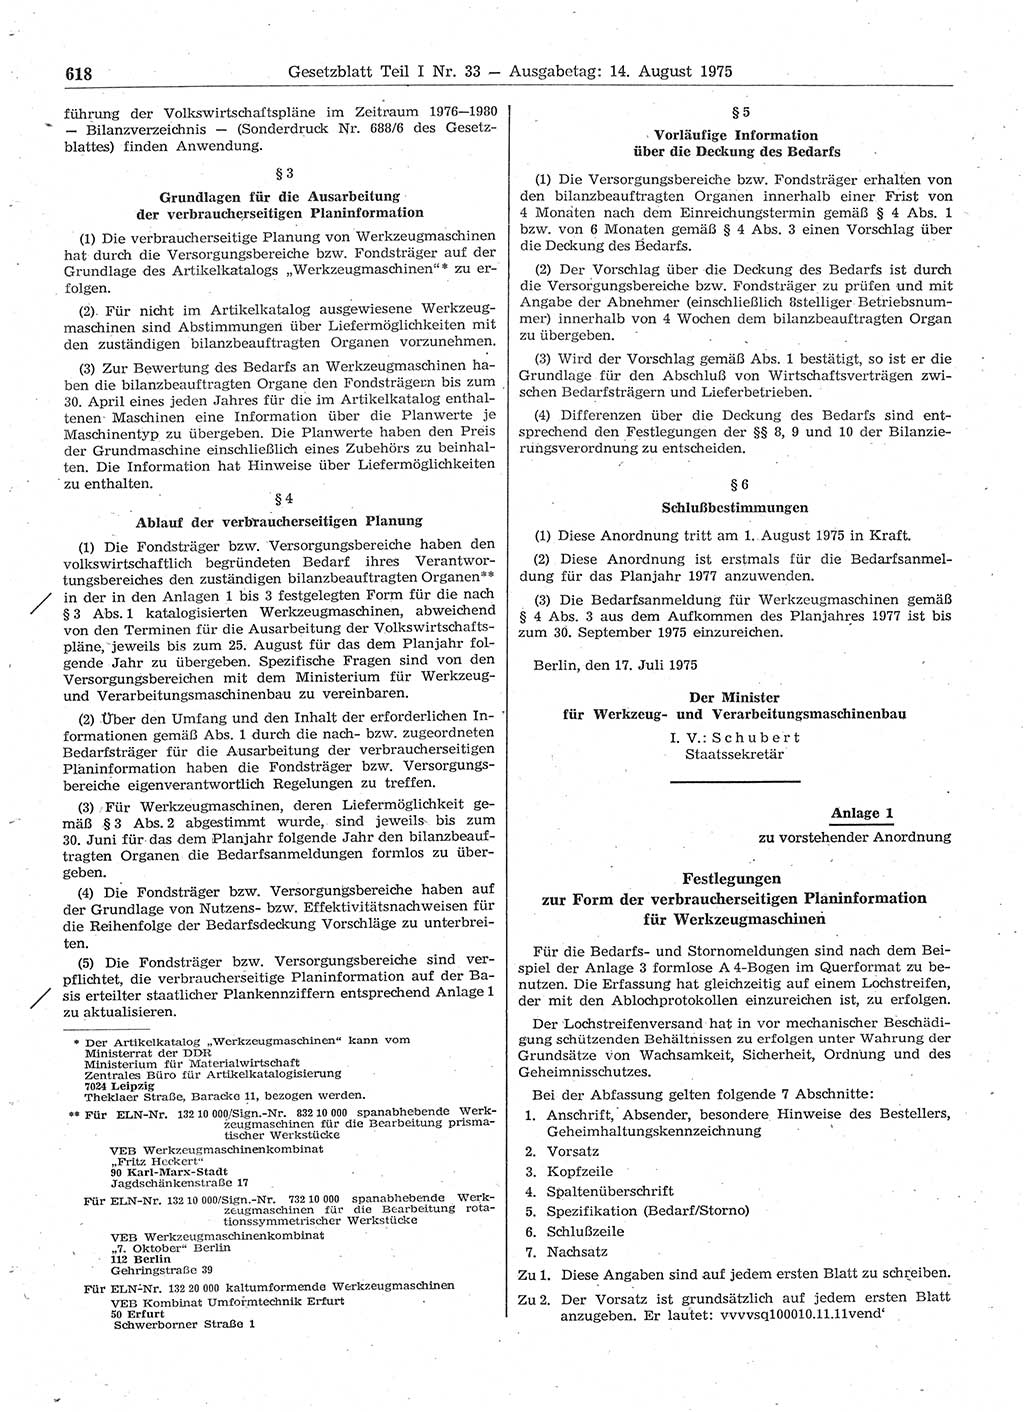 Gesetzblatt (GBl.) der Deutschen Demokratischen Republik (DDR) Teil Ⅰ 1975, Seite 618 (GBl. DDR Ⅰ 1975, S. 618)